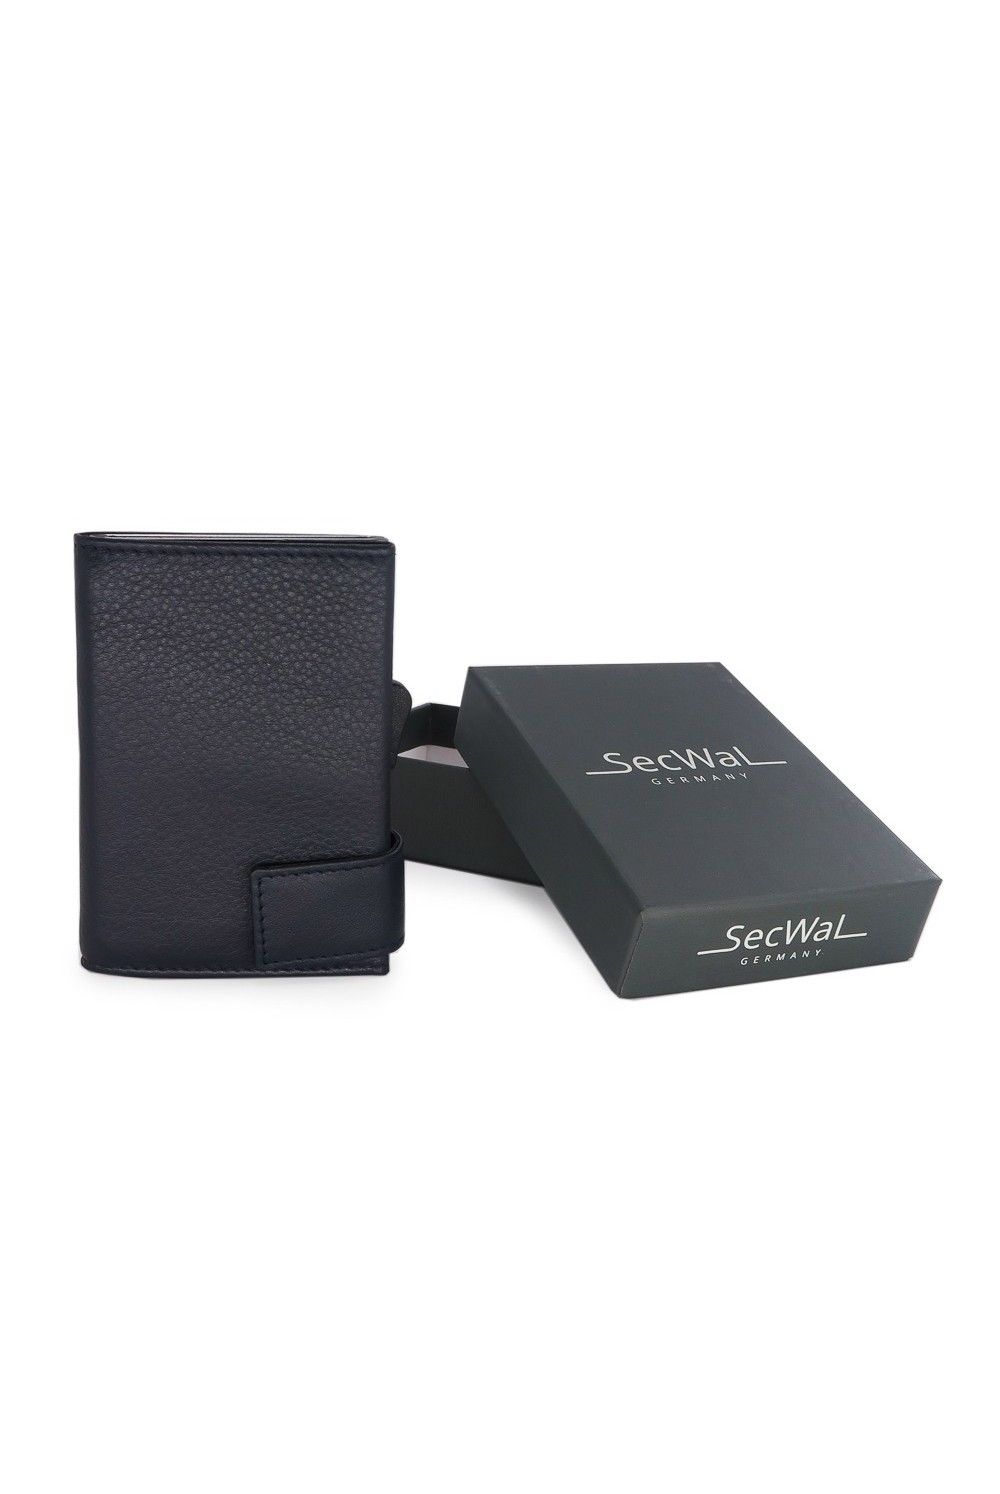 SecWal Card Case DK Leather dark grey